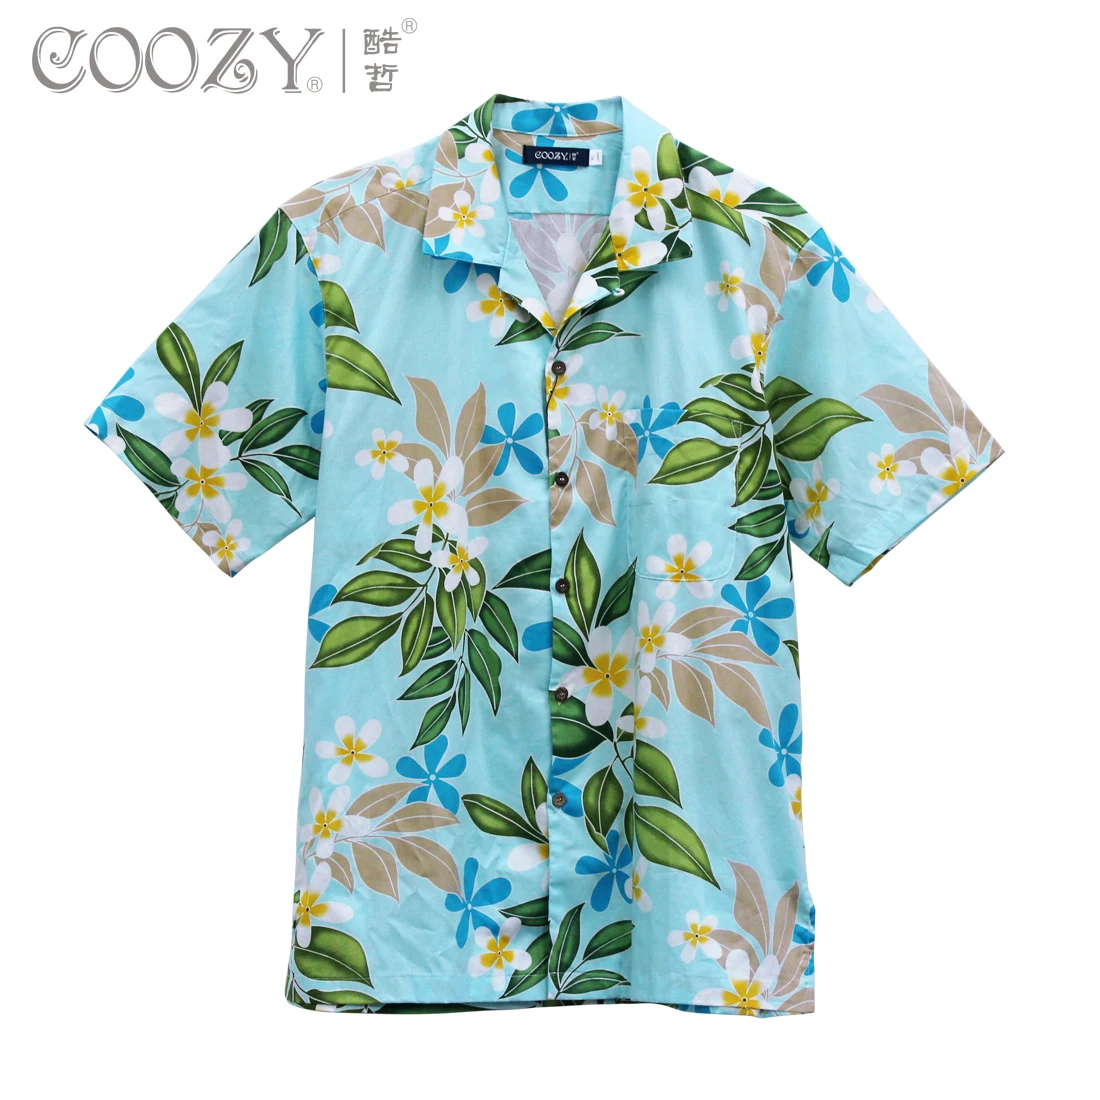 Coozy мужская одежда рубашка модного размера плюс Повседневная Свободная гавайская рубашка с коротким рукавом Гавайская рубашка 2XL 3XL гавайская рубашка 2XL 3XL